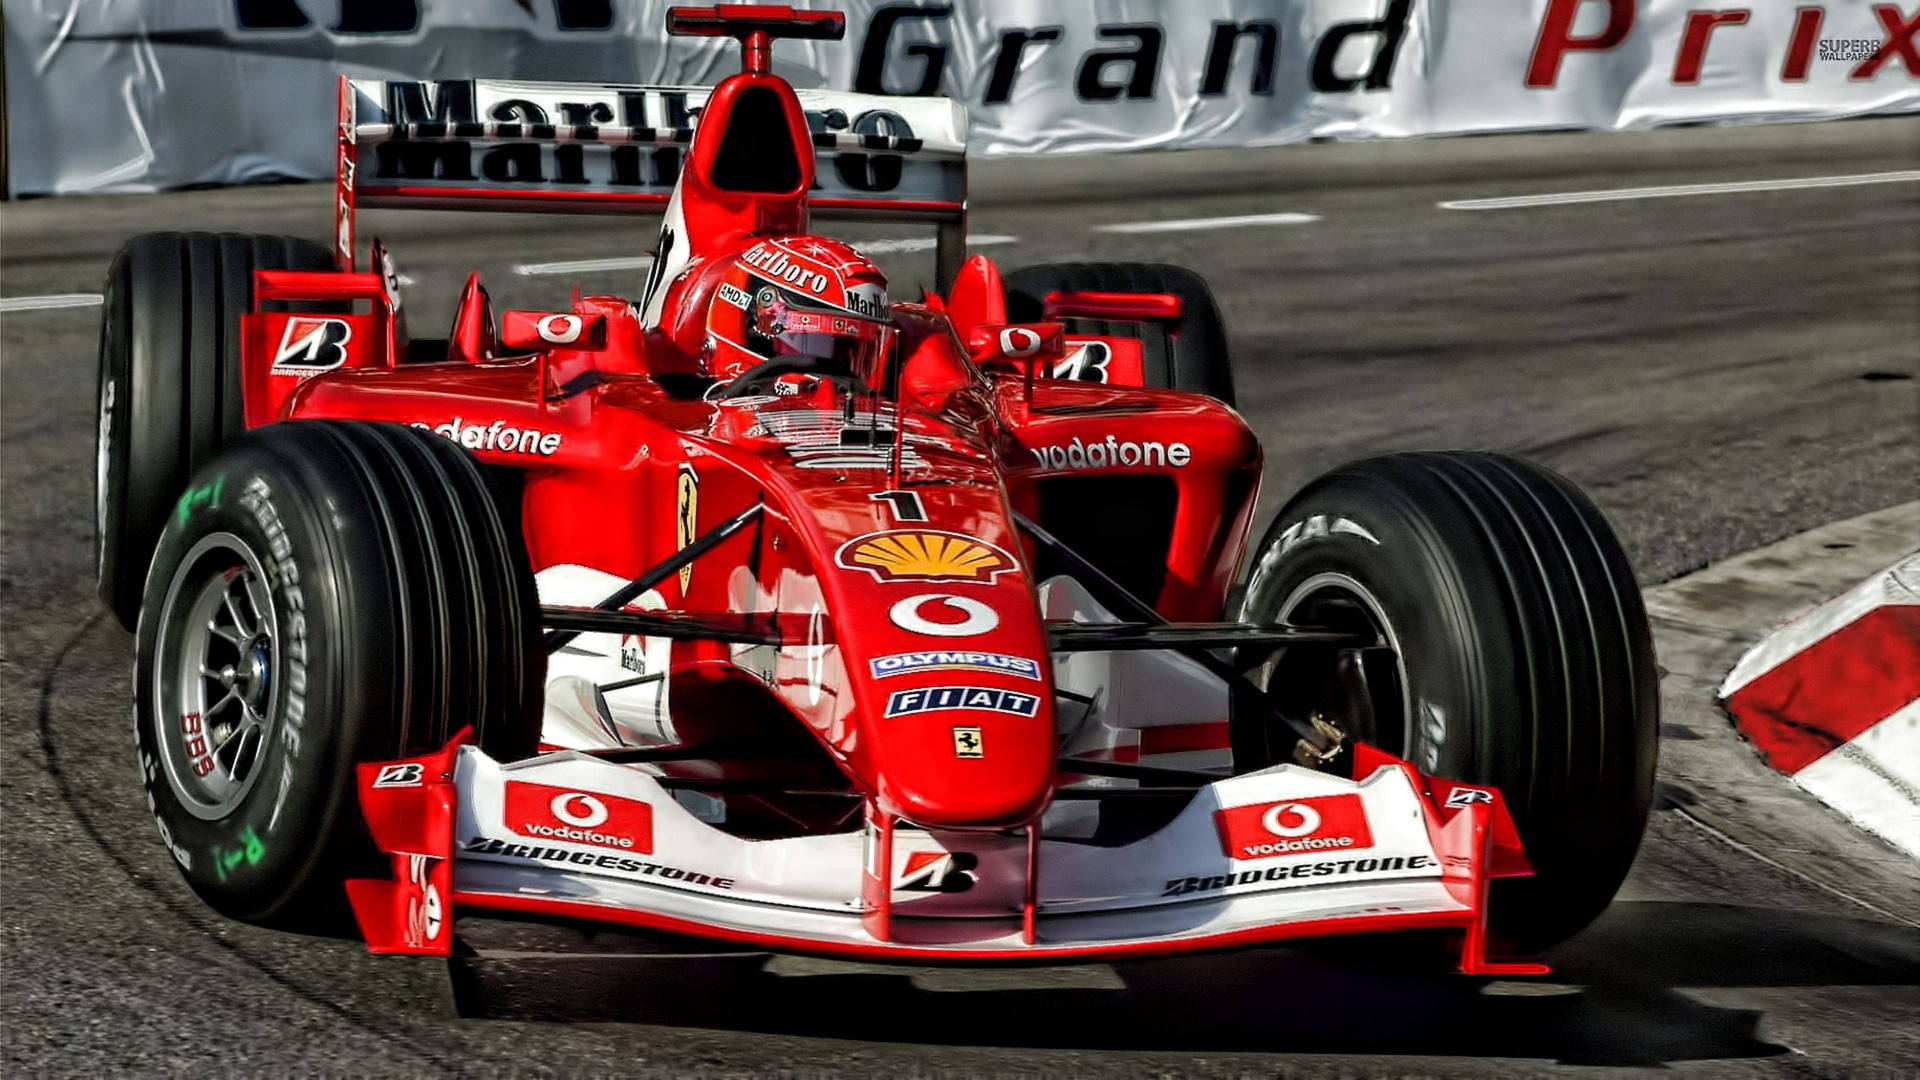 F1 Racing Car Close-up Photography